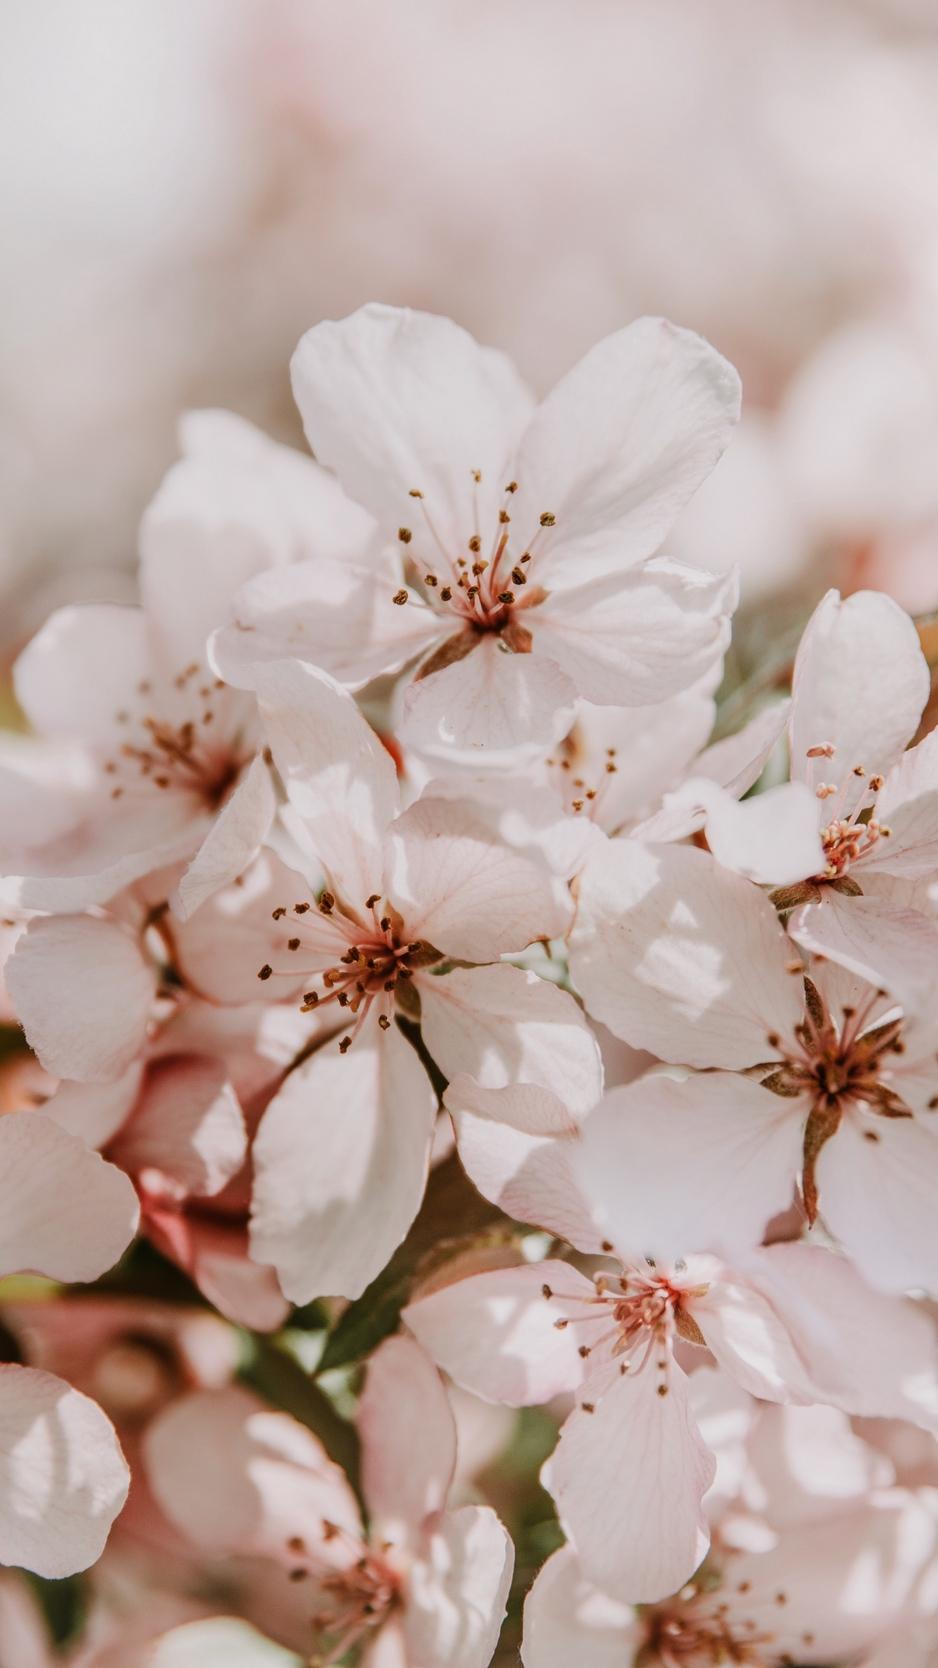 Download wallpaper 938x1668 sakura, flowers, spring, blooms